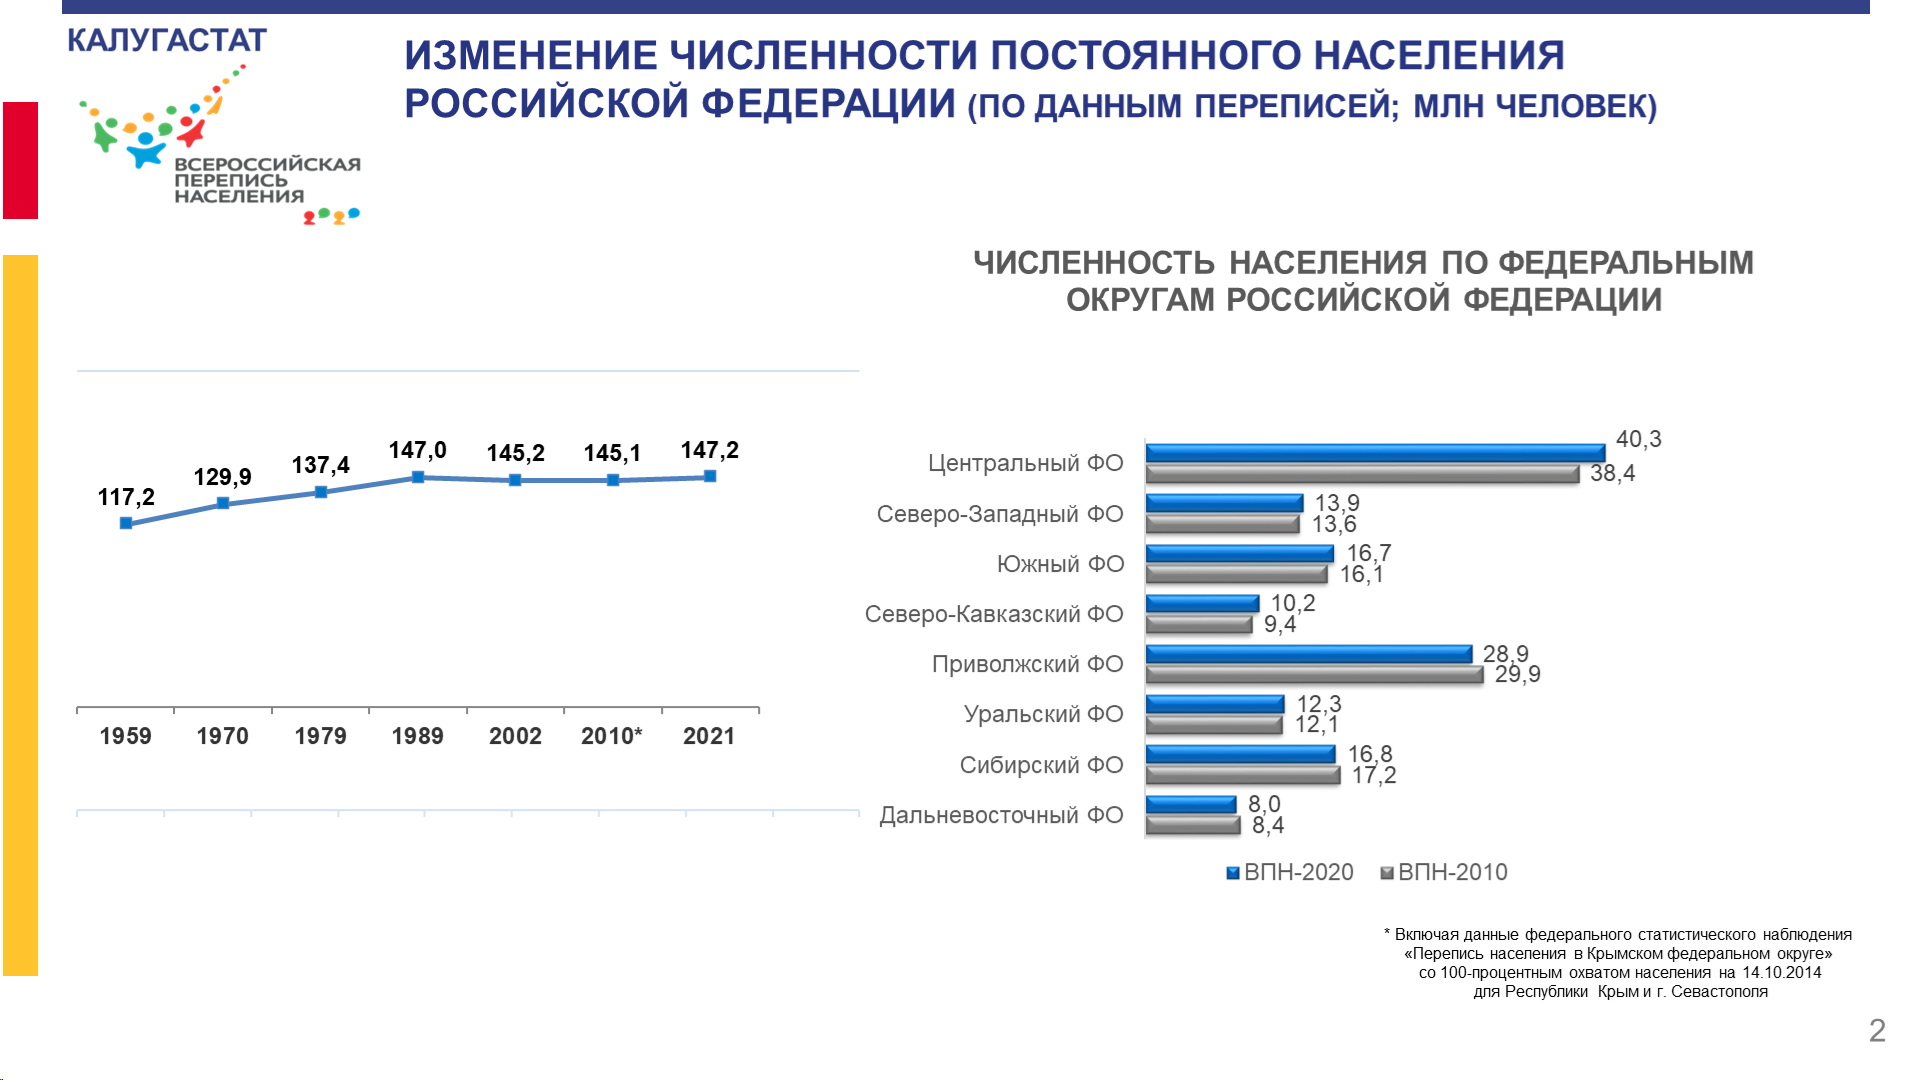 Калужская область по предварительным итогам переписи занимает третье место в ЦФО по приросту населения